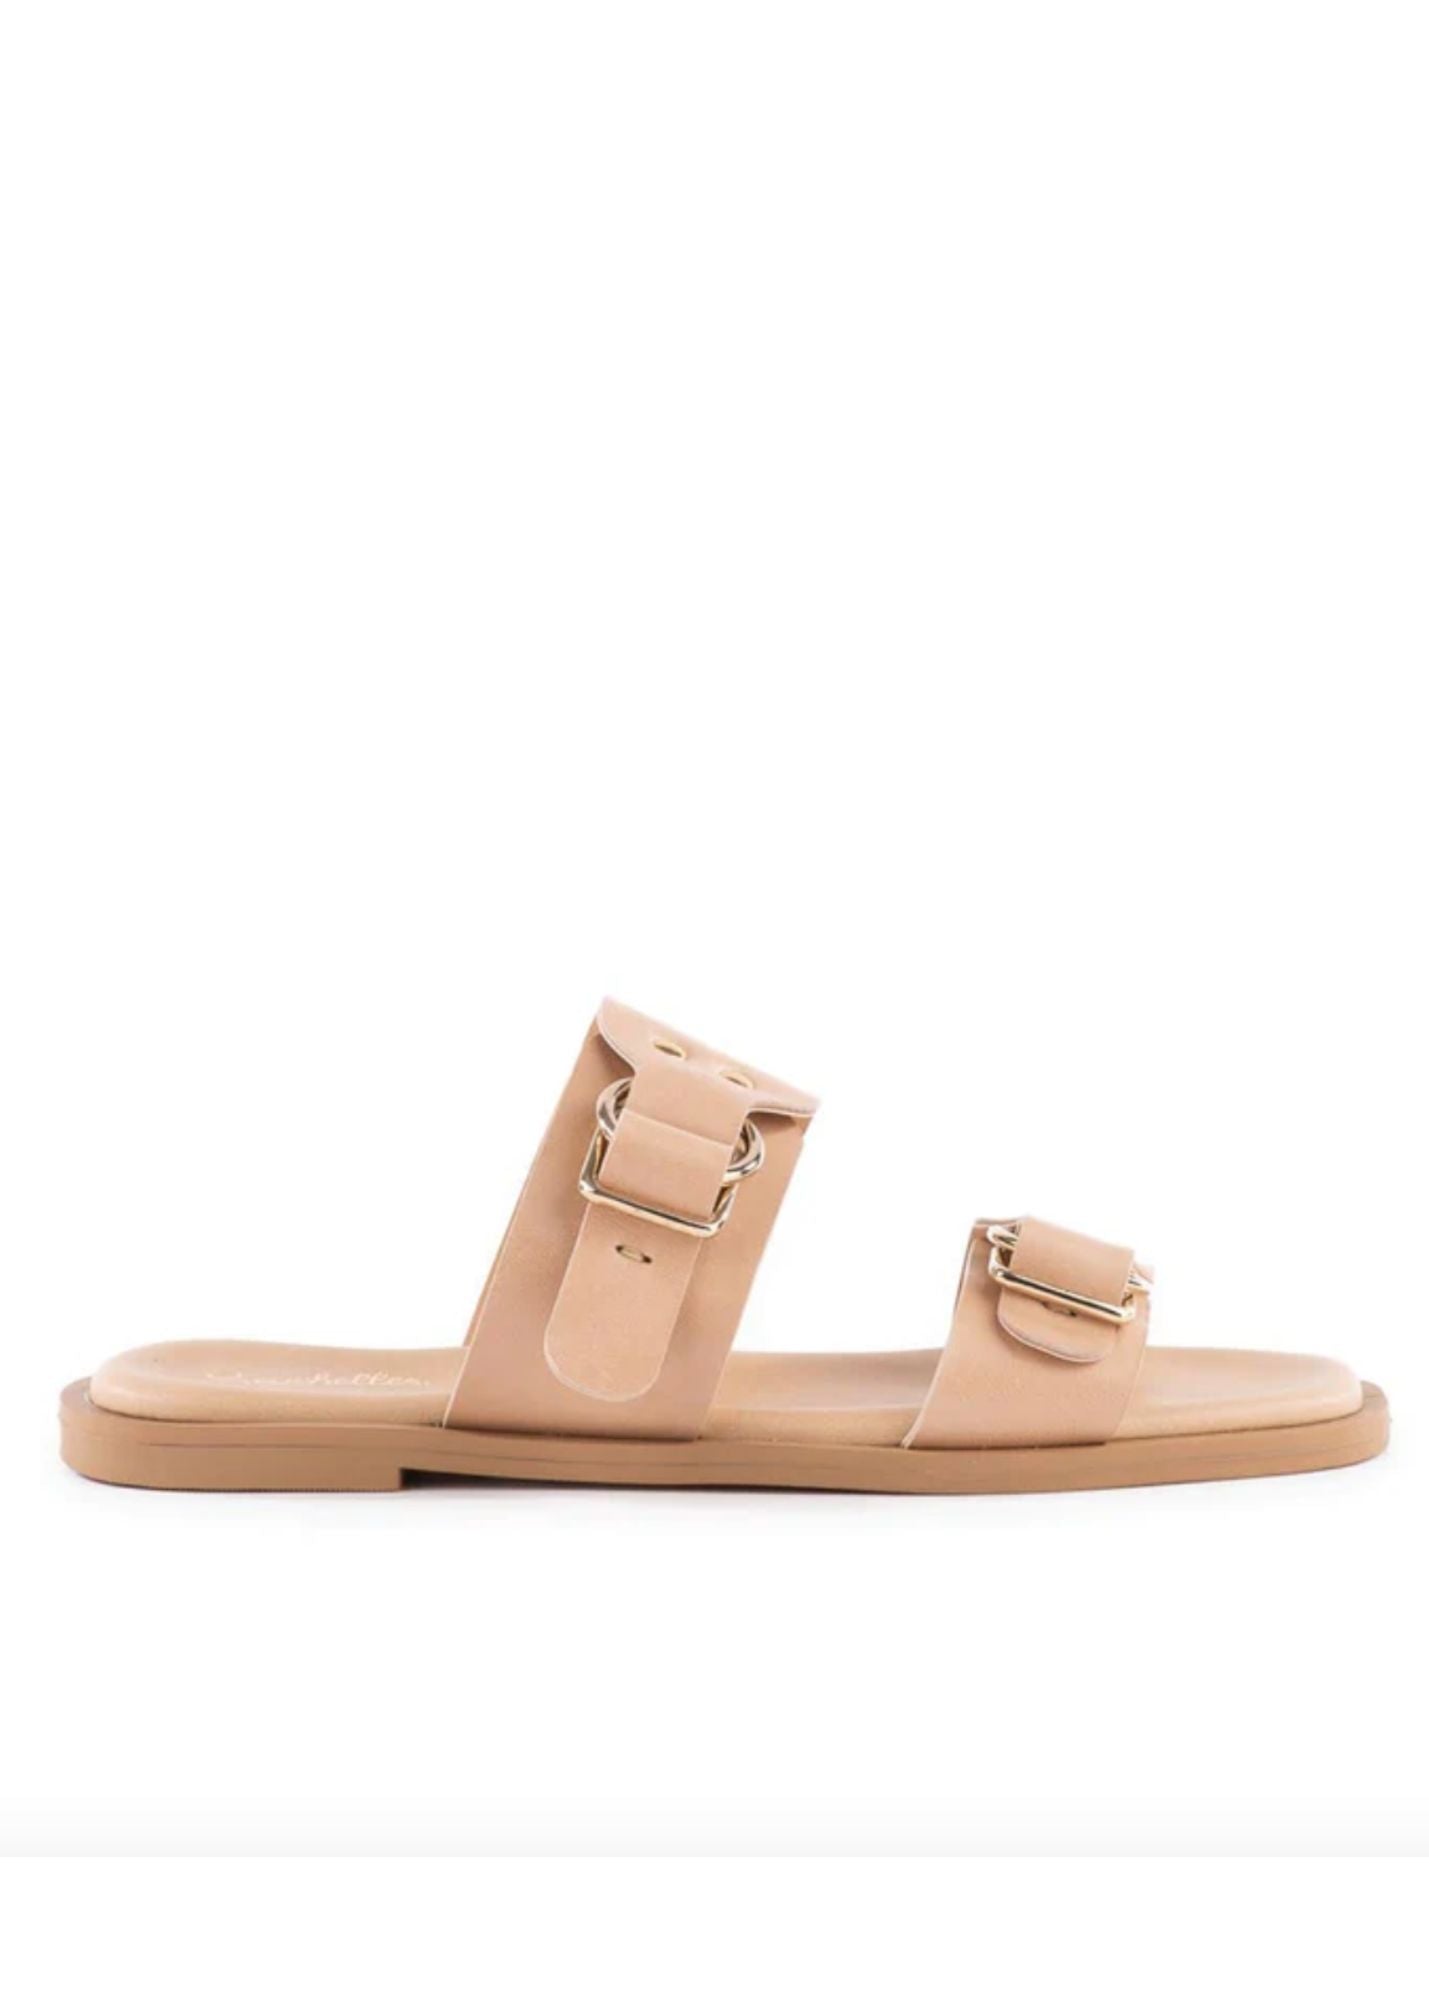 Seychelles® Admire Me Leather Slide Sandals Shoes